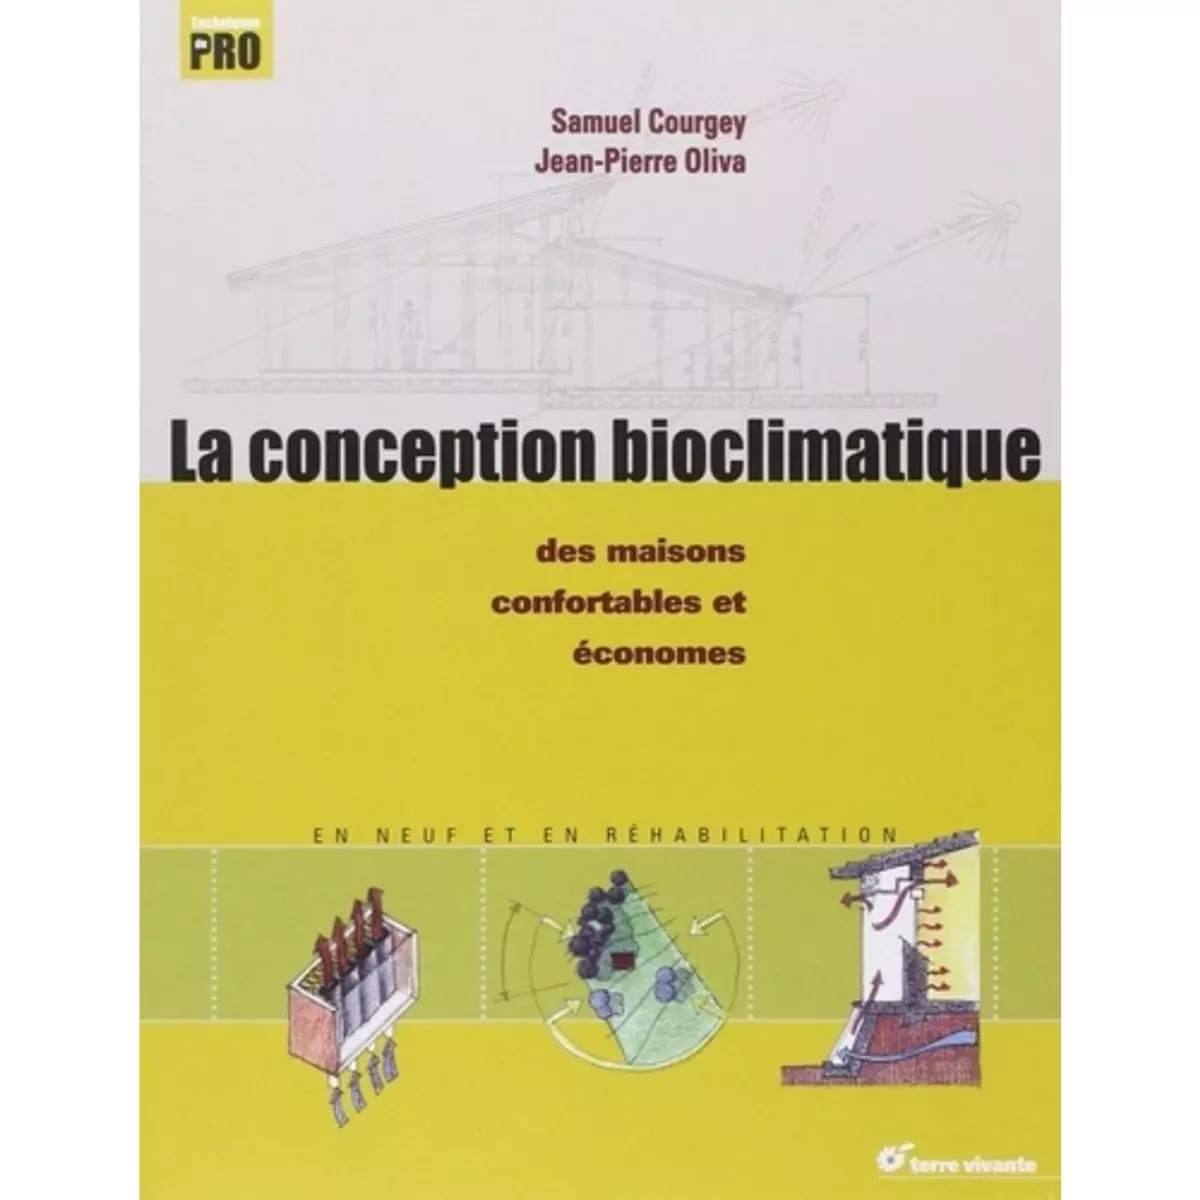  LA CONCEPTION BIOCLIMATIQUE. DES MAISONS ECONOMES ET CONFORTABLES EN NEUF ET EN REHABILITATION, Oliva Jean-Pierre